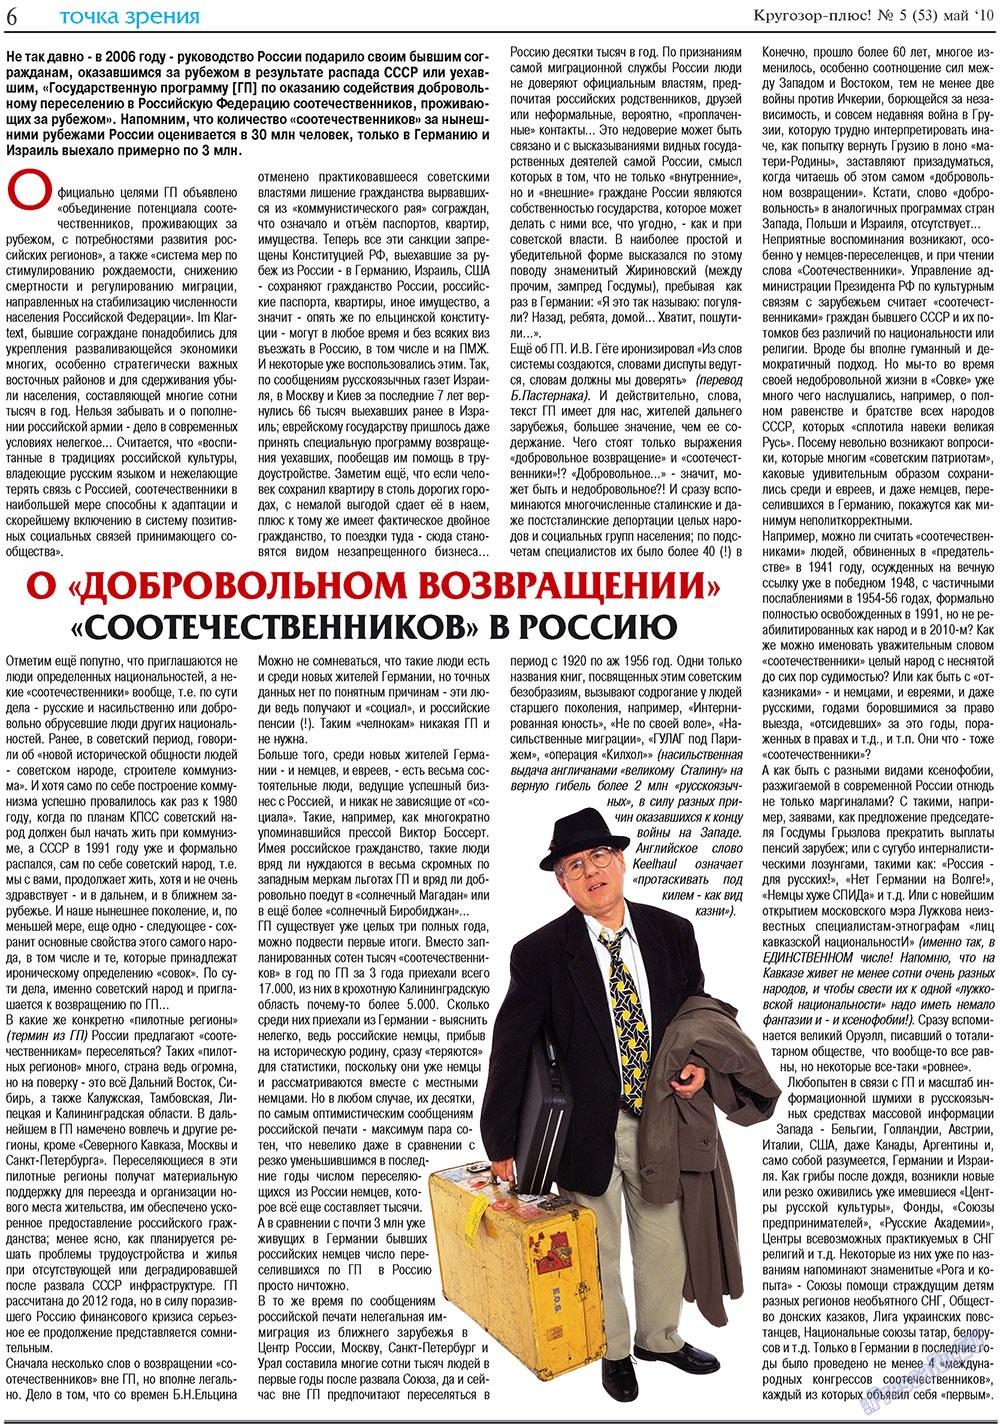 Кругозор плюс!, газета. 2010 №5 стр.22